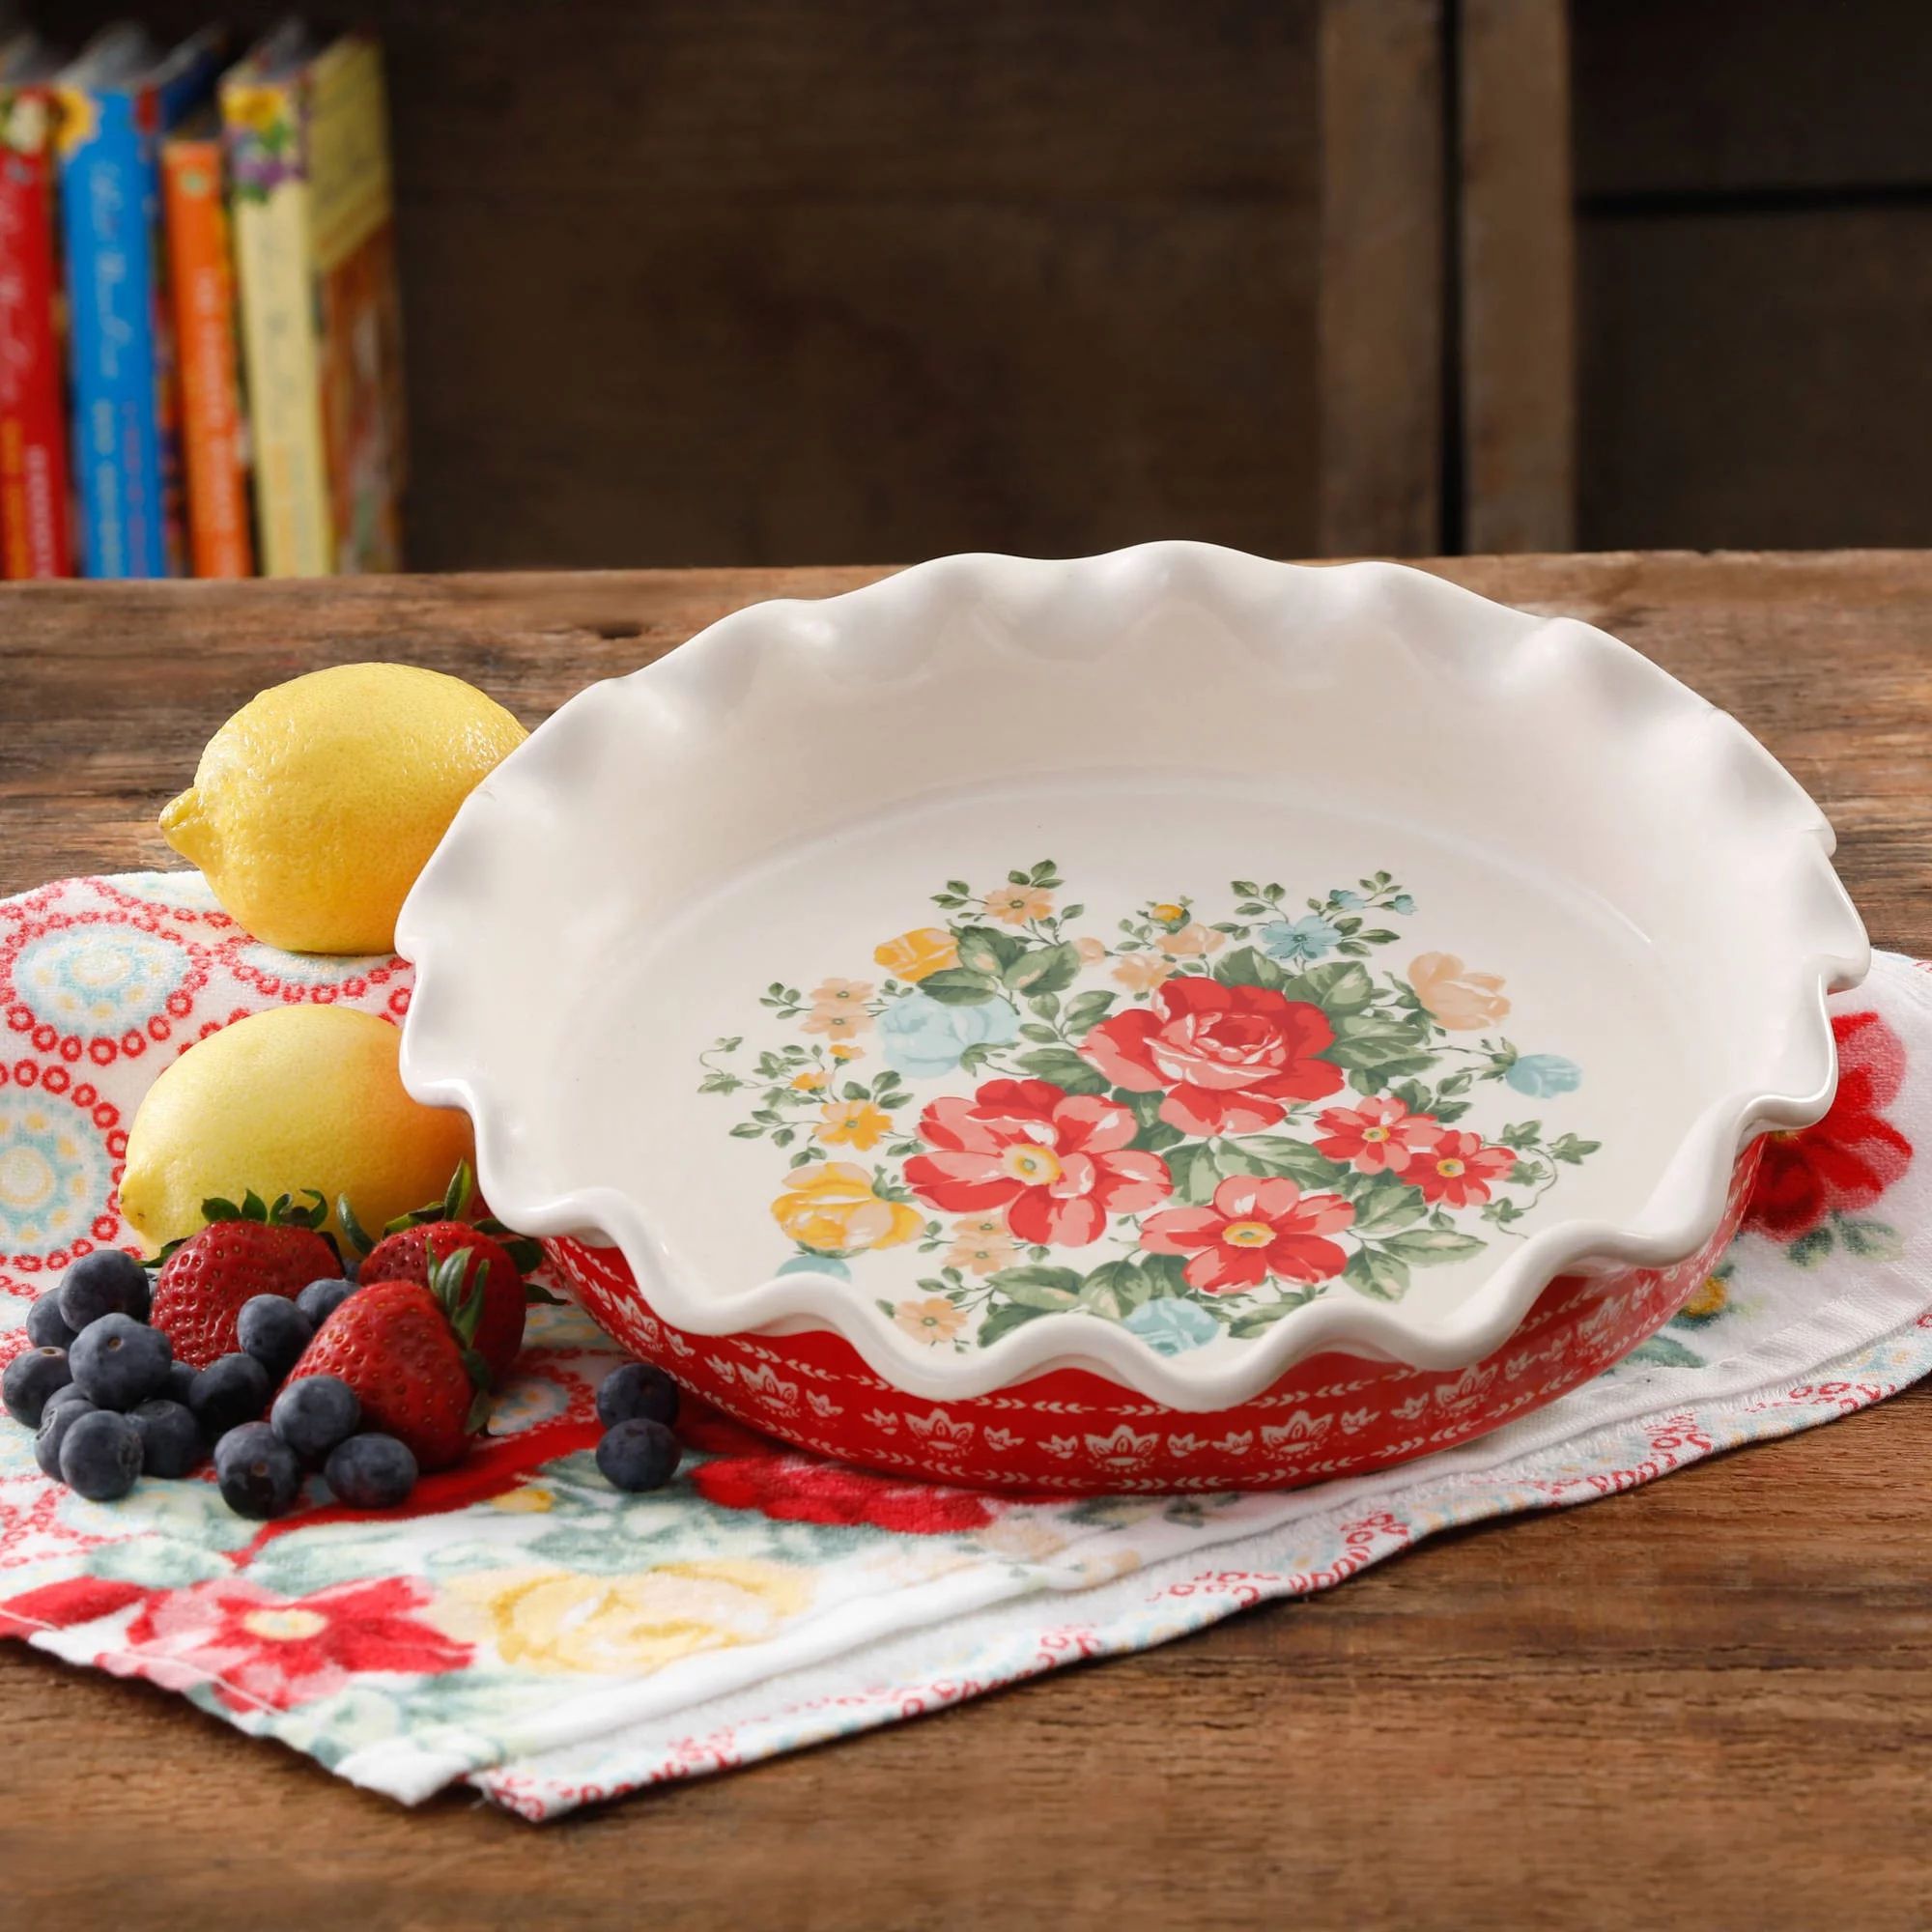 The Pioneer Woman Vintage Floral 9-Inch Pie Plate | Walmart (US)